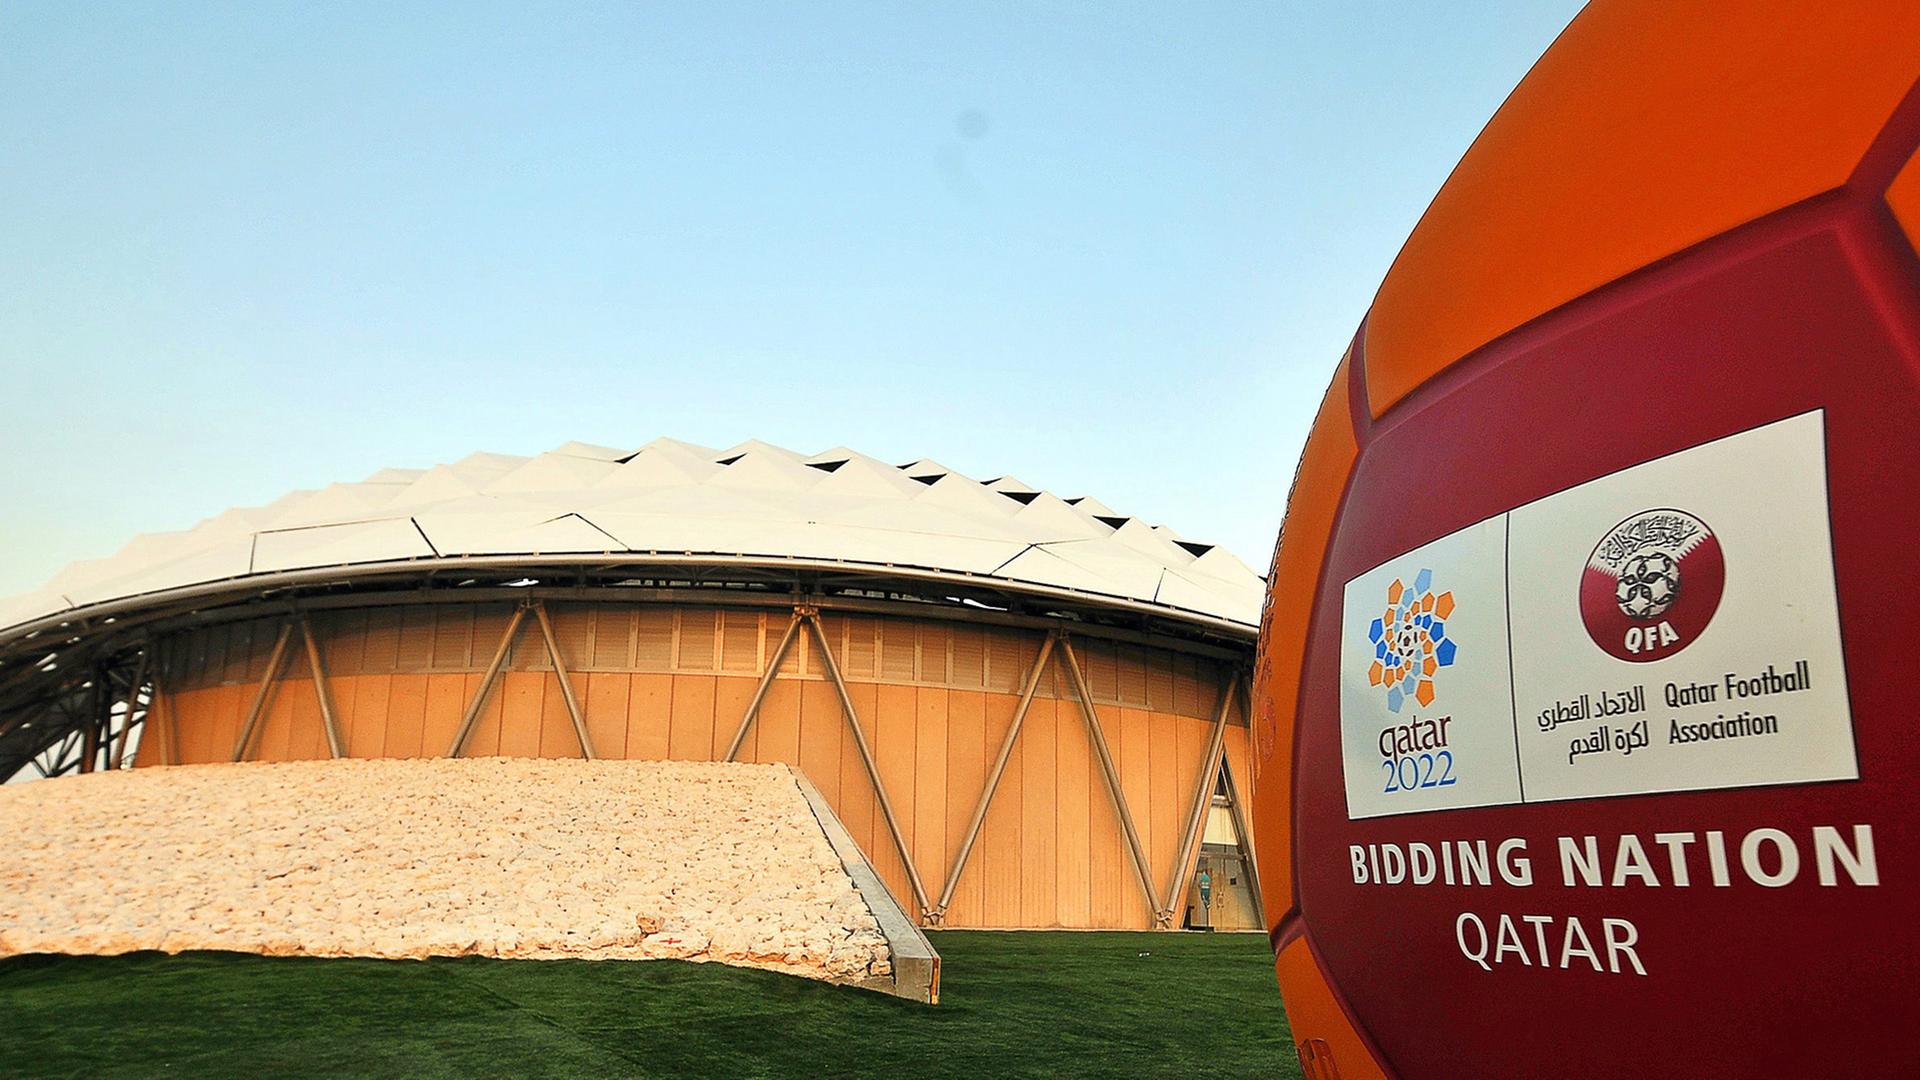 Ein roter Ball mit dem Logo Katars als Bewerber für die Austragung der Fußball-WM 2022, im Hintergrund ein Fußballstadion